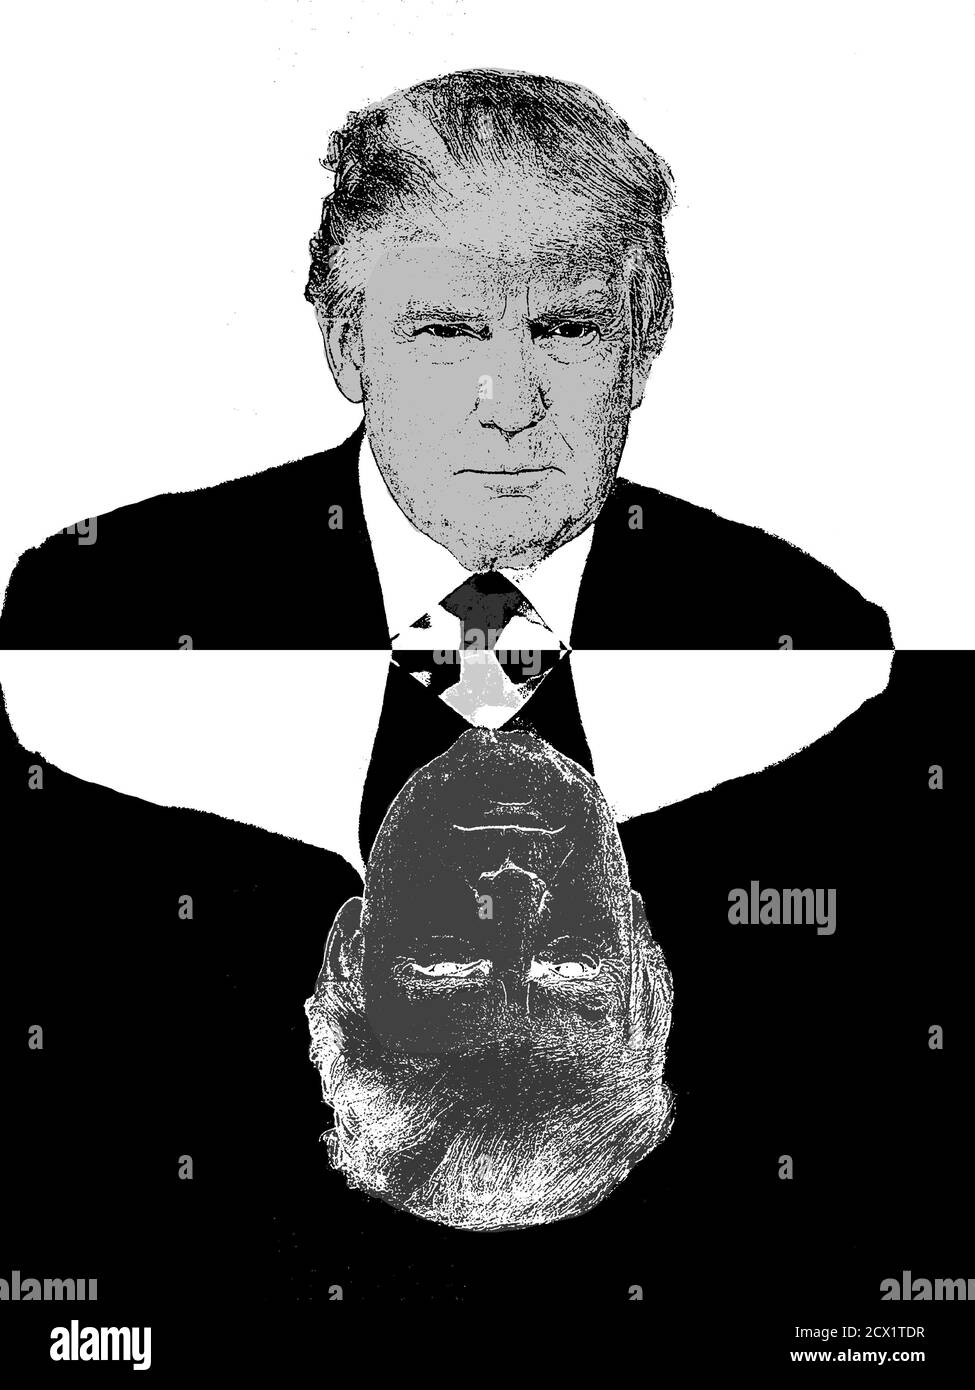 Donald Trump di fronte a sé, illustrazione in stile cartone animato bianco e nero. Menzogne di Trump, doppia personalità, ambivalente. Fallimento di Trump. trump 2024 Foto Stock